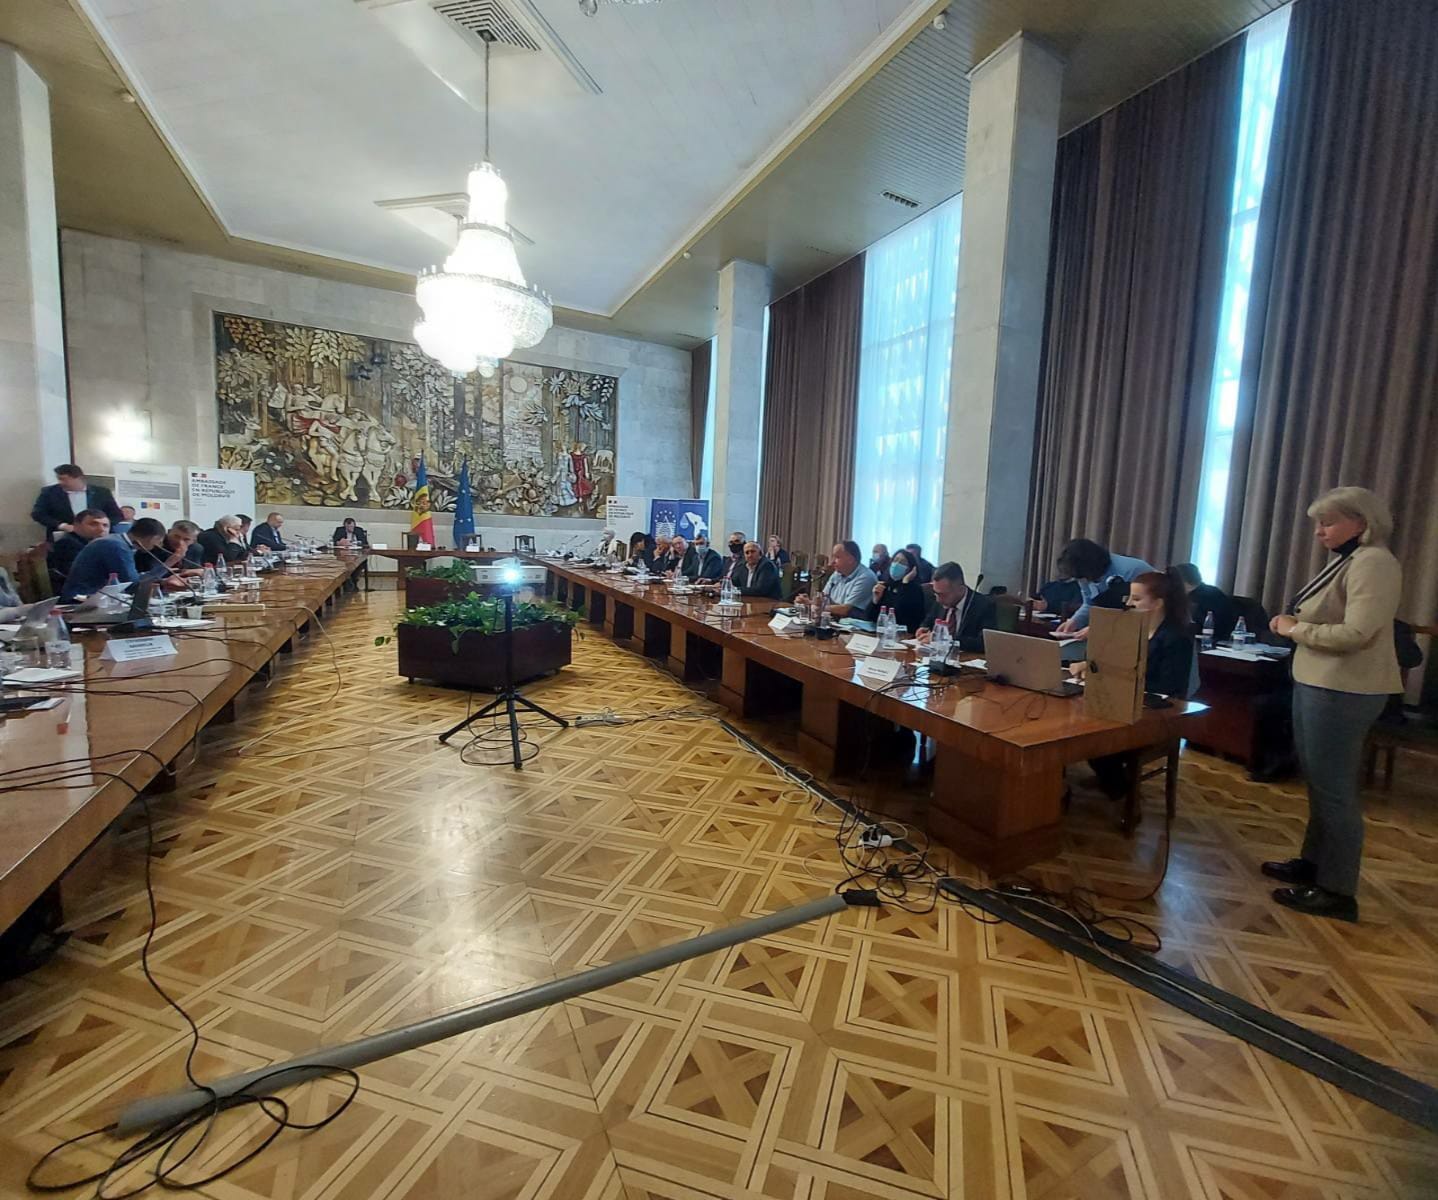 Președintele raionului, dnul Vasile MĂRCUȚĂ a participat la ședința de lucru în incinta Palatului Republicii, organizată de către Ambasada Franței